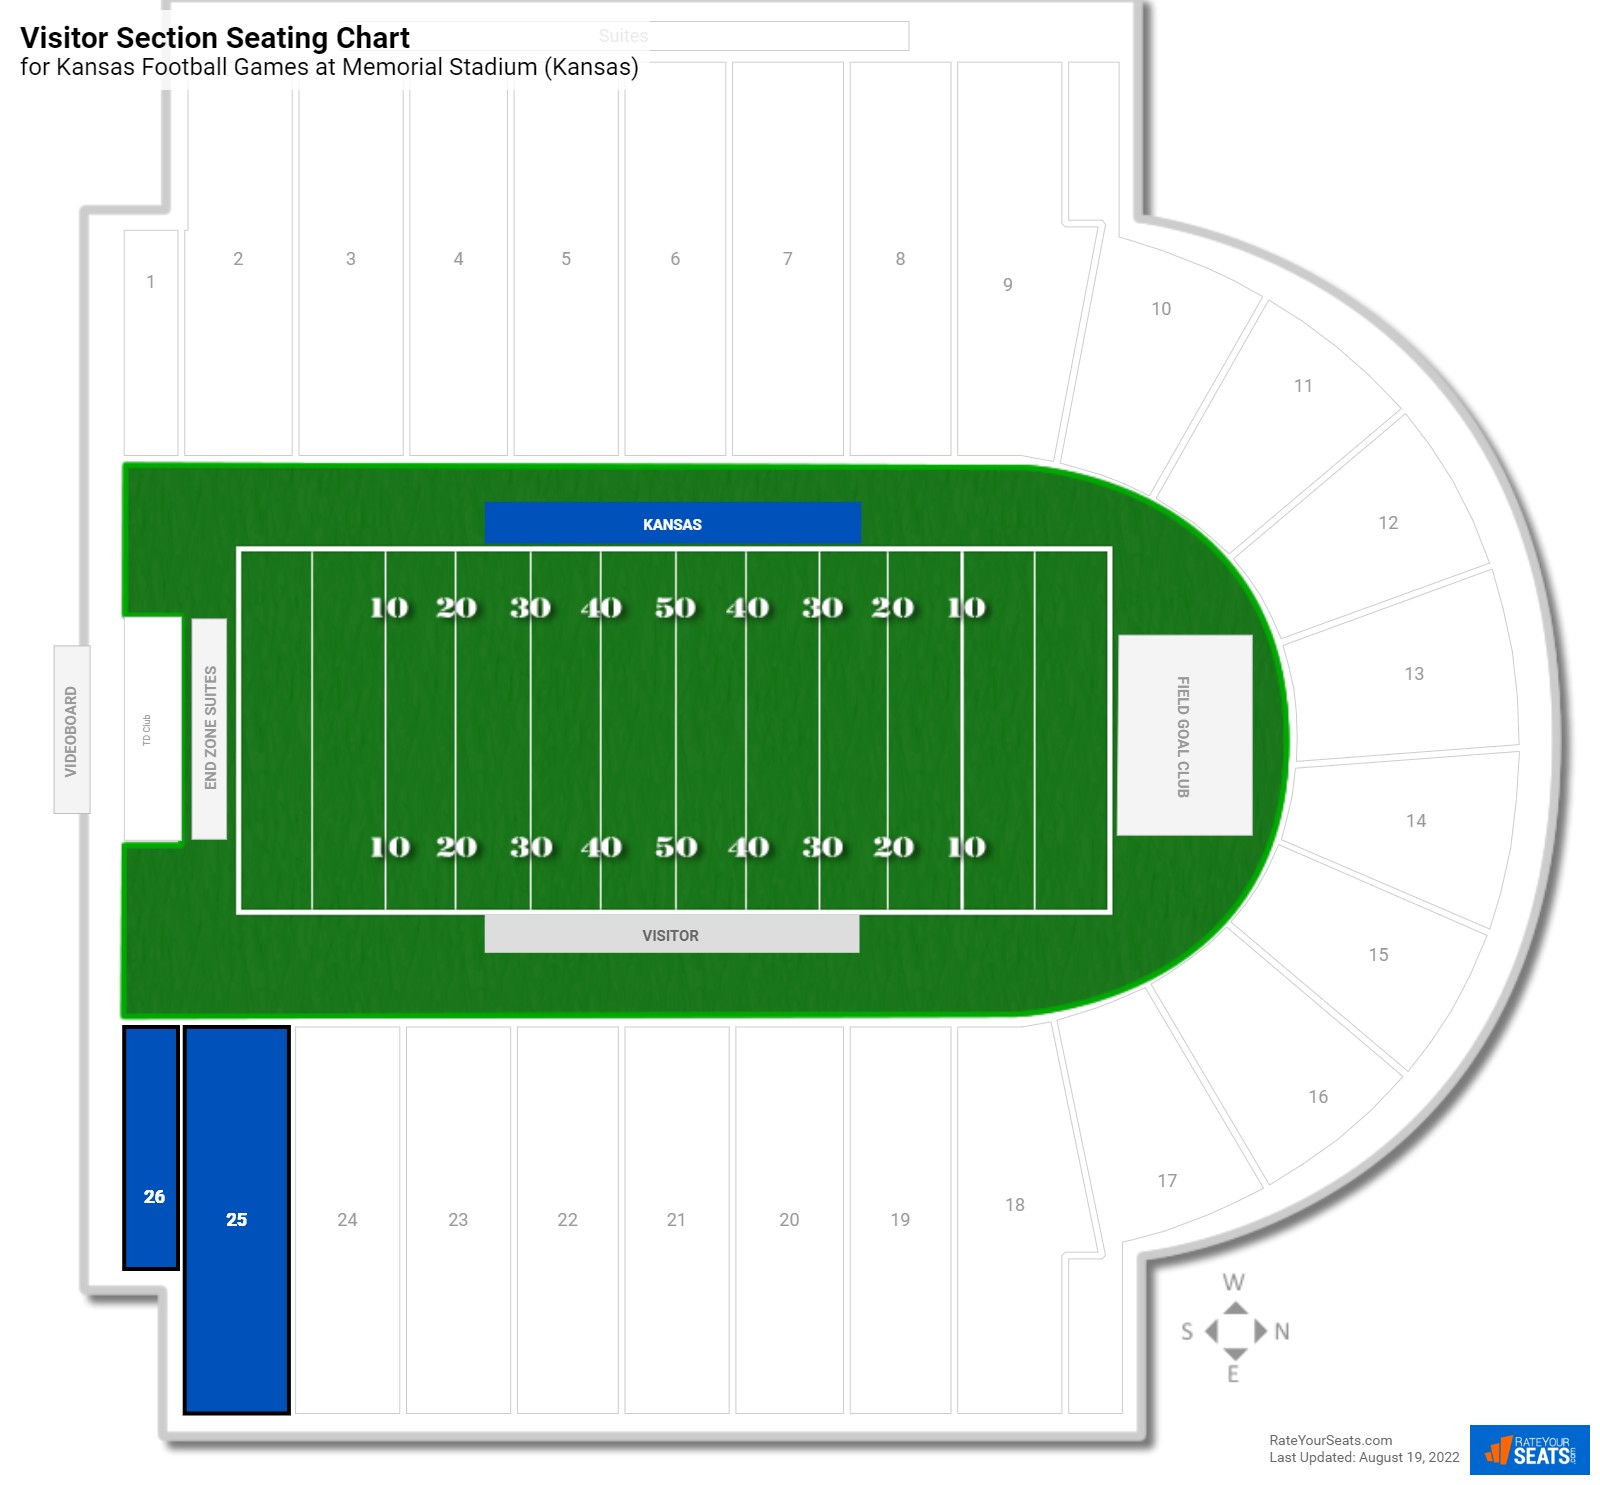 Kansas Visitor Section Seating Chart at Memorial Stadium (Kansas)